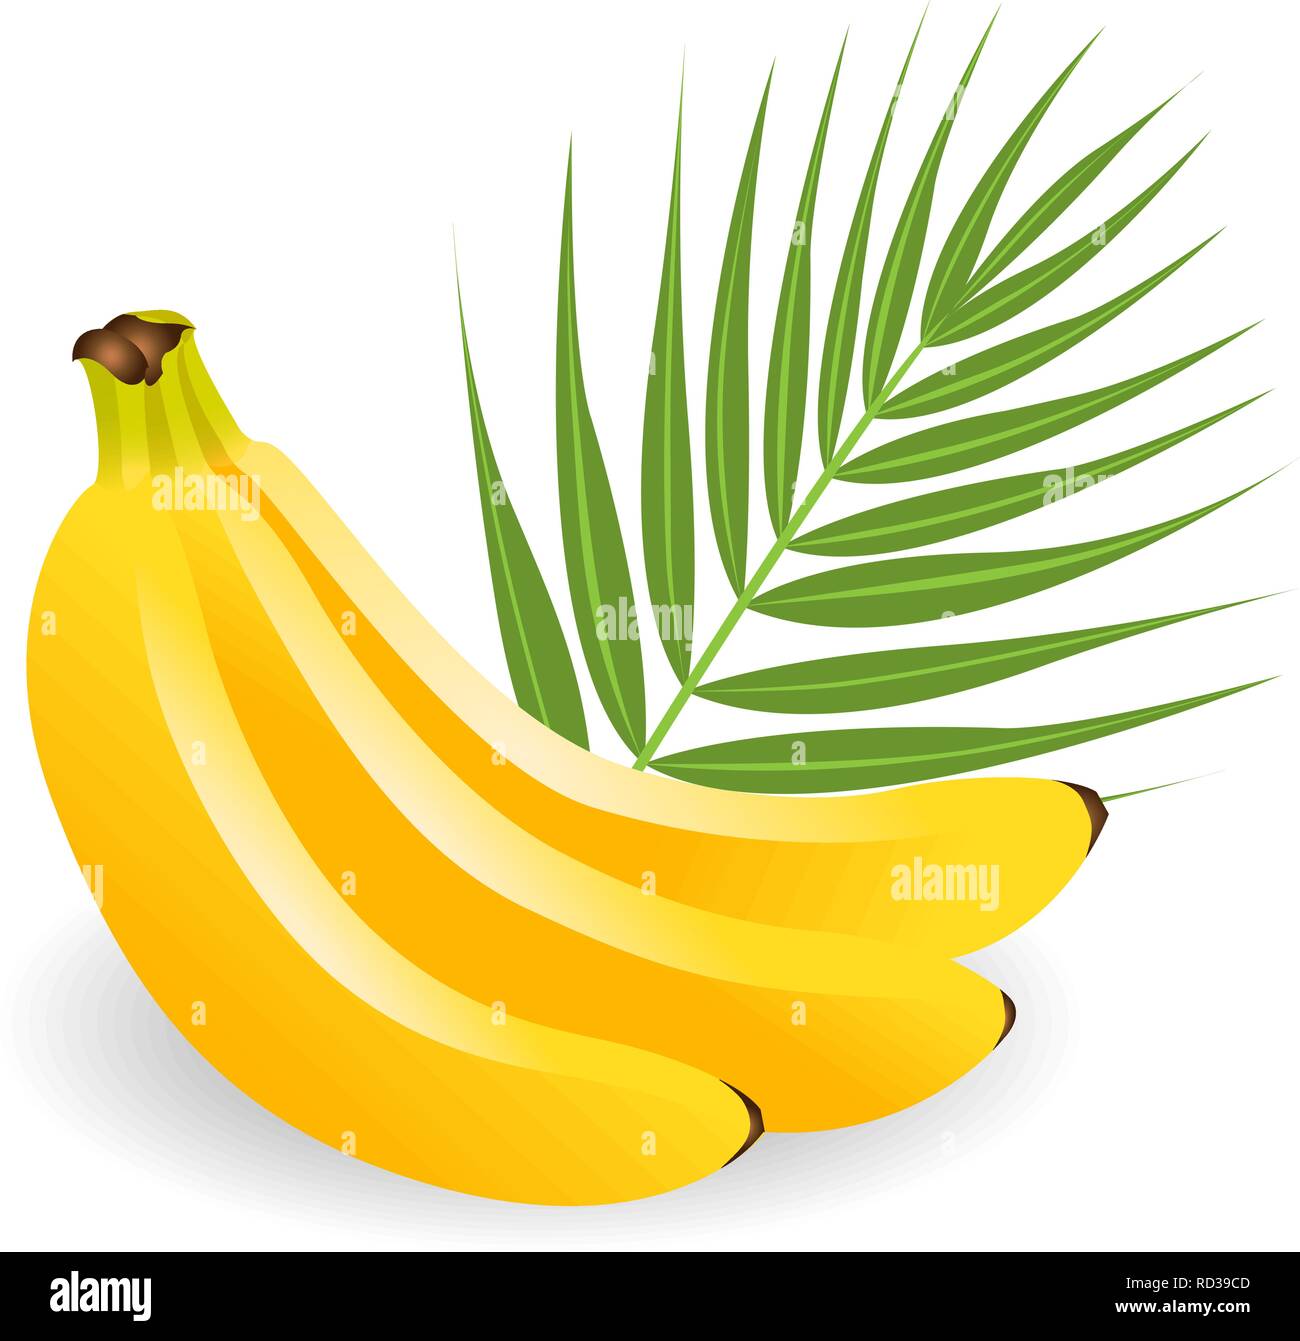 Gesunde, Gelb tropische Früchte. Reifen, saftigen Bananen mit grünen  Blättern. Sommer Früchte für gesunden Lebensstil. Bananen Obst flachbild  Symbol isoliert auf weißem Stock-Vektorgrafik - Alamy